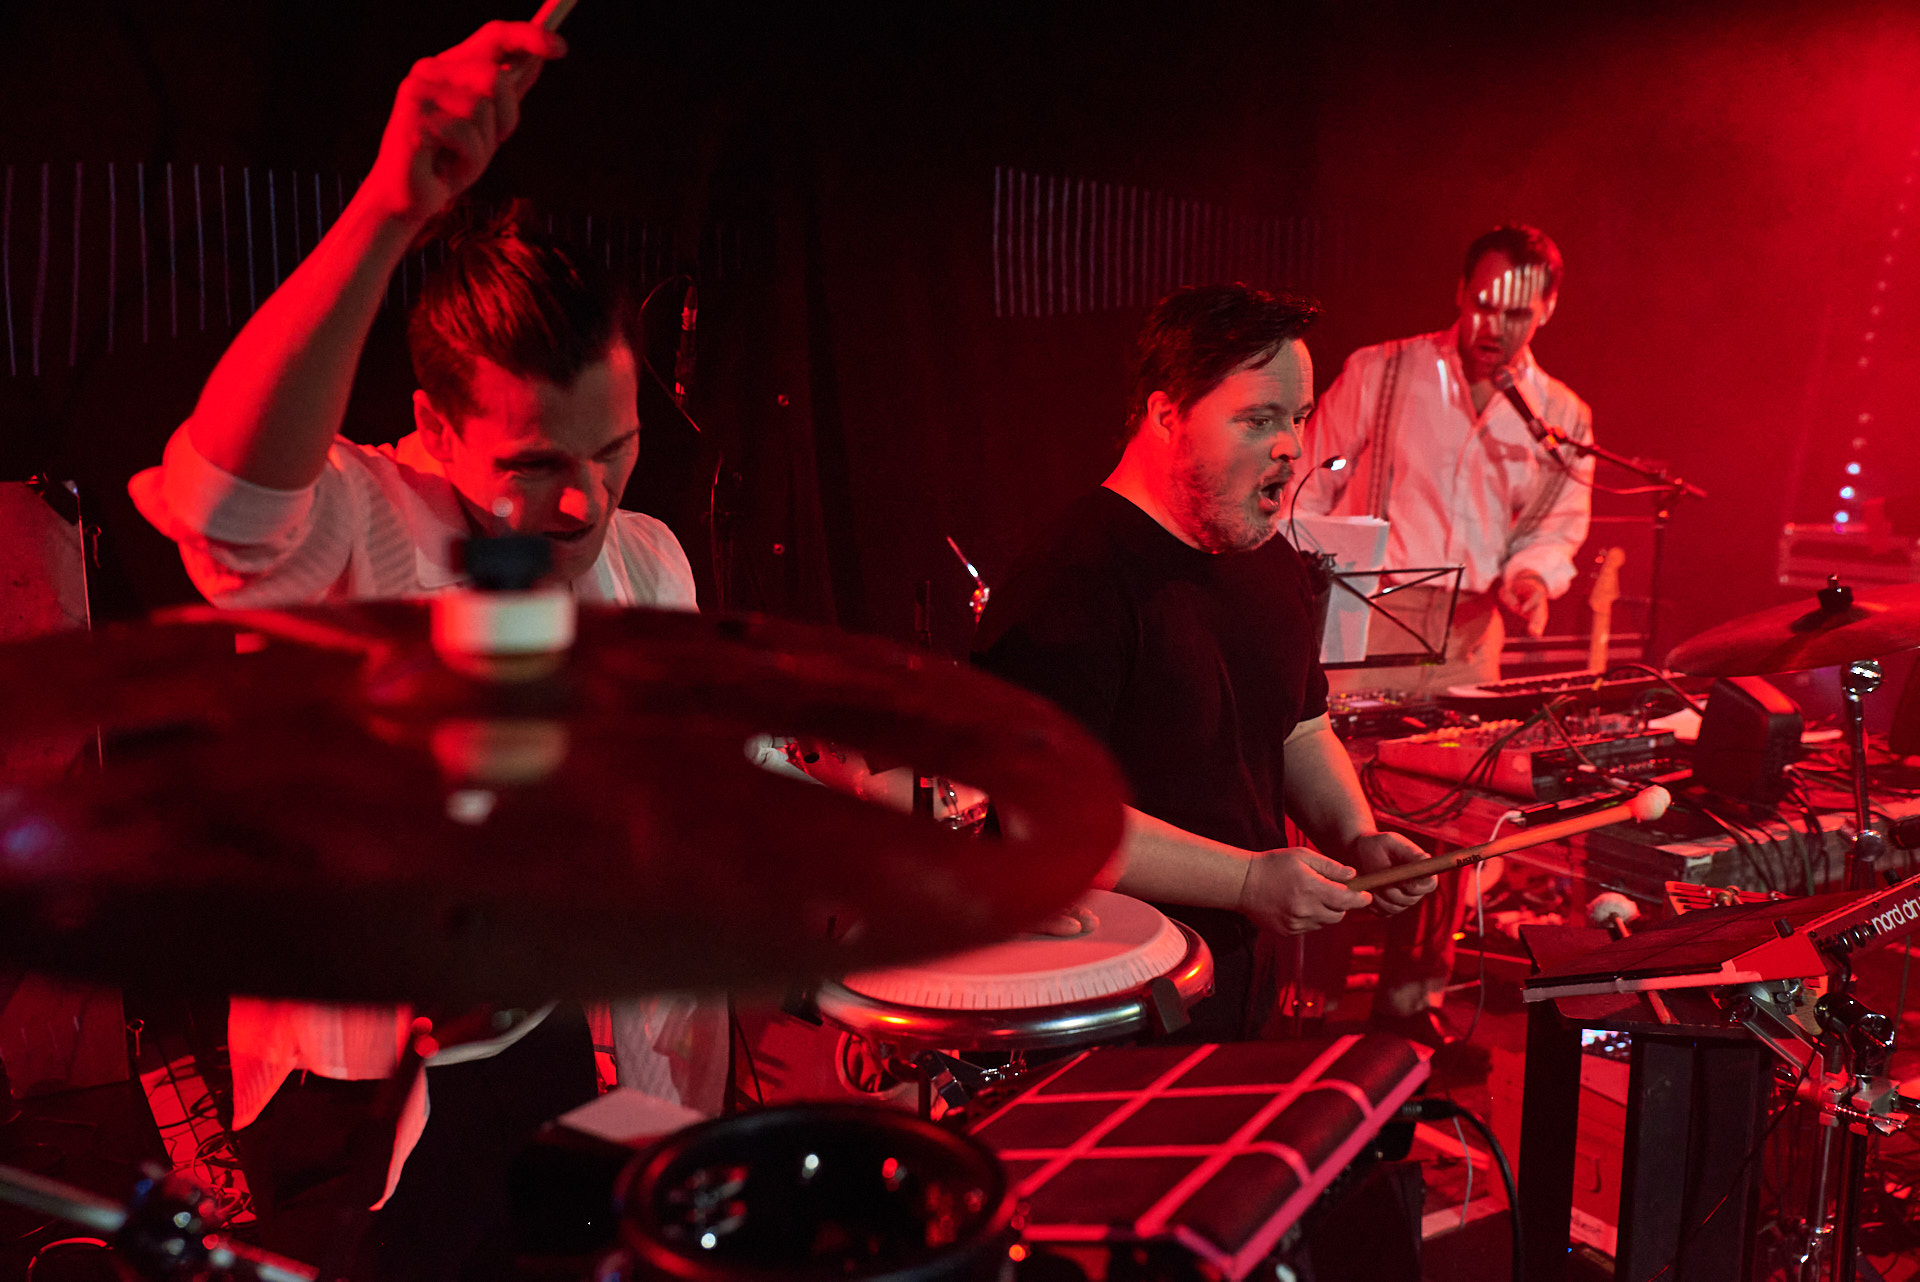 In rotes Licht gehüllt sieht man die zwei Percussionisten von 21 downbeat in Aktion an ihren Drummachines.